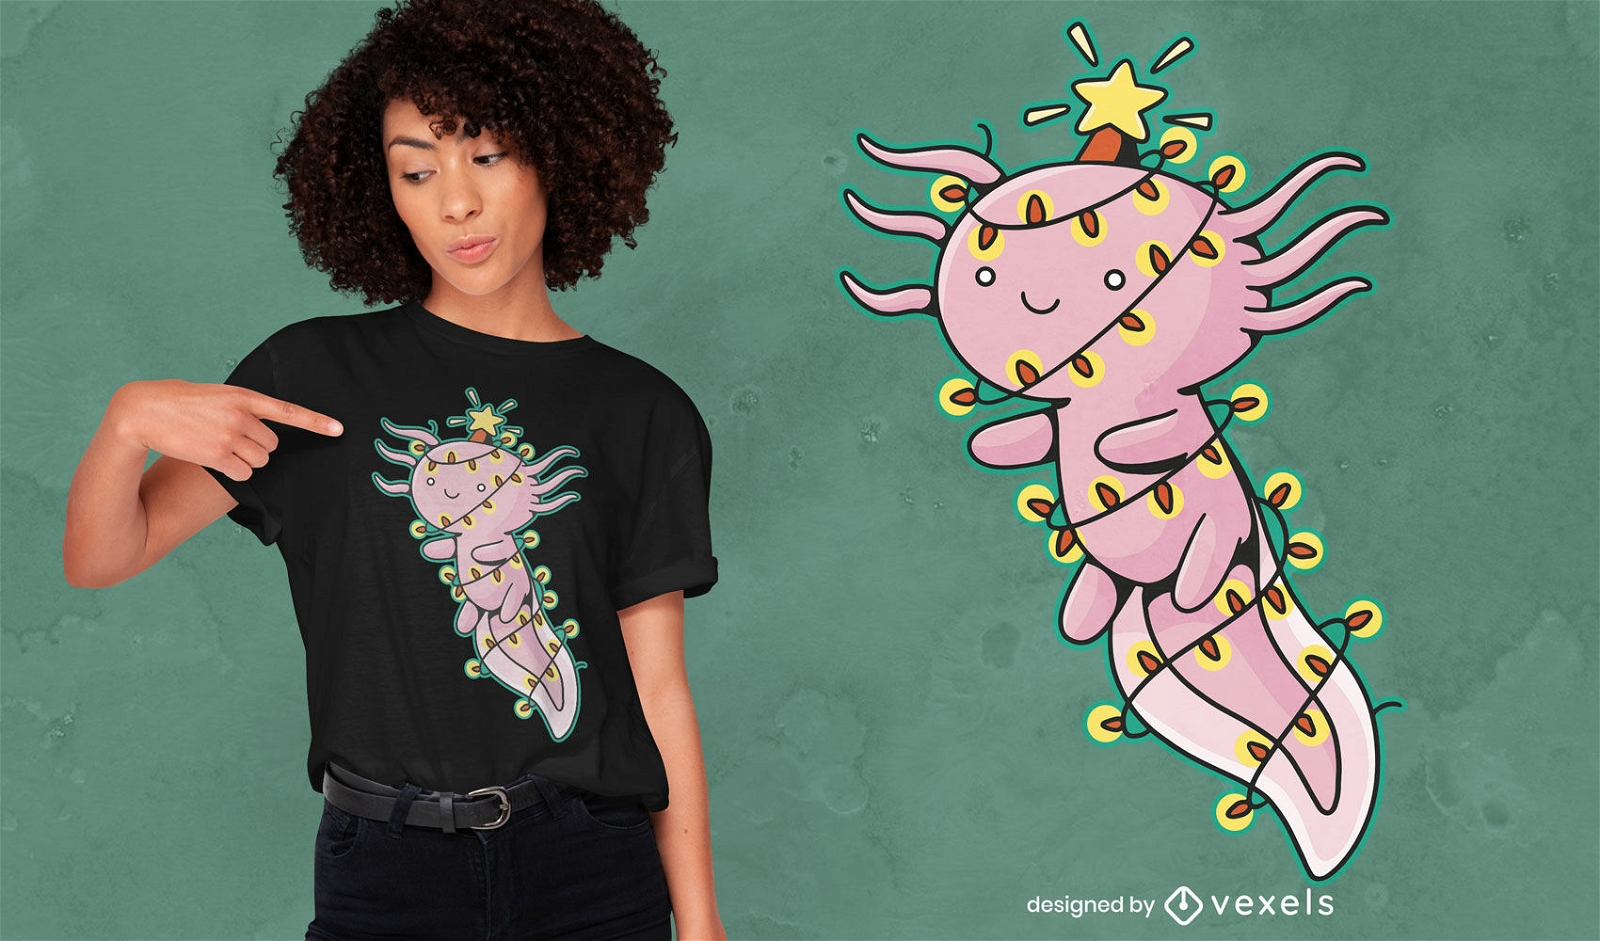 Axolotl in christmas lights t-shirt design